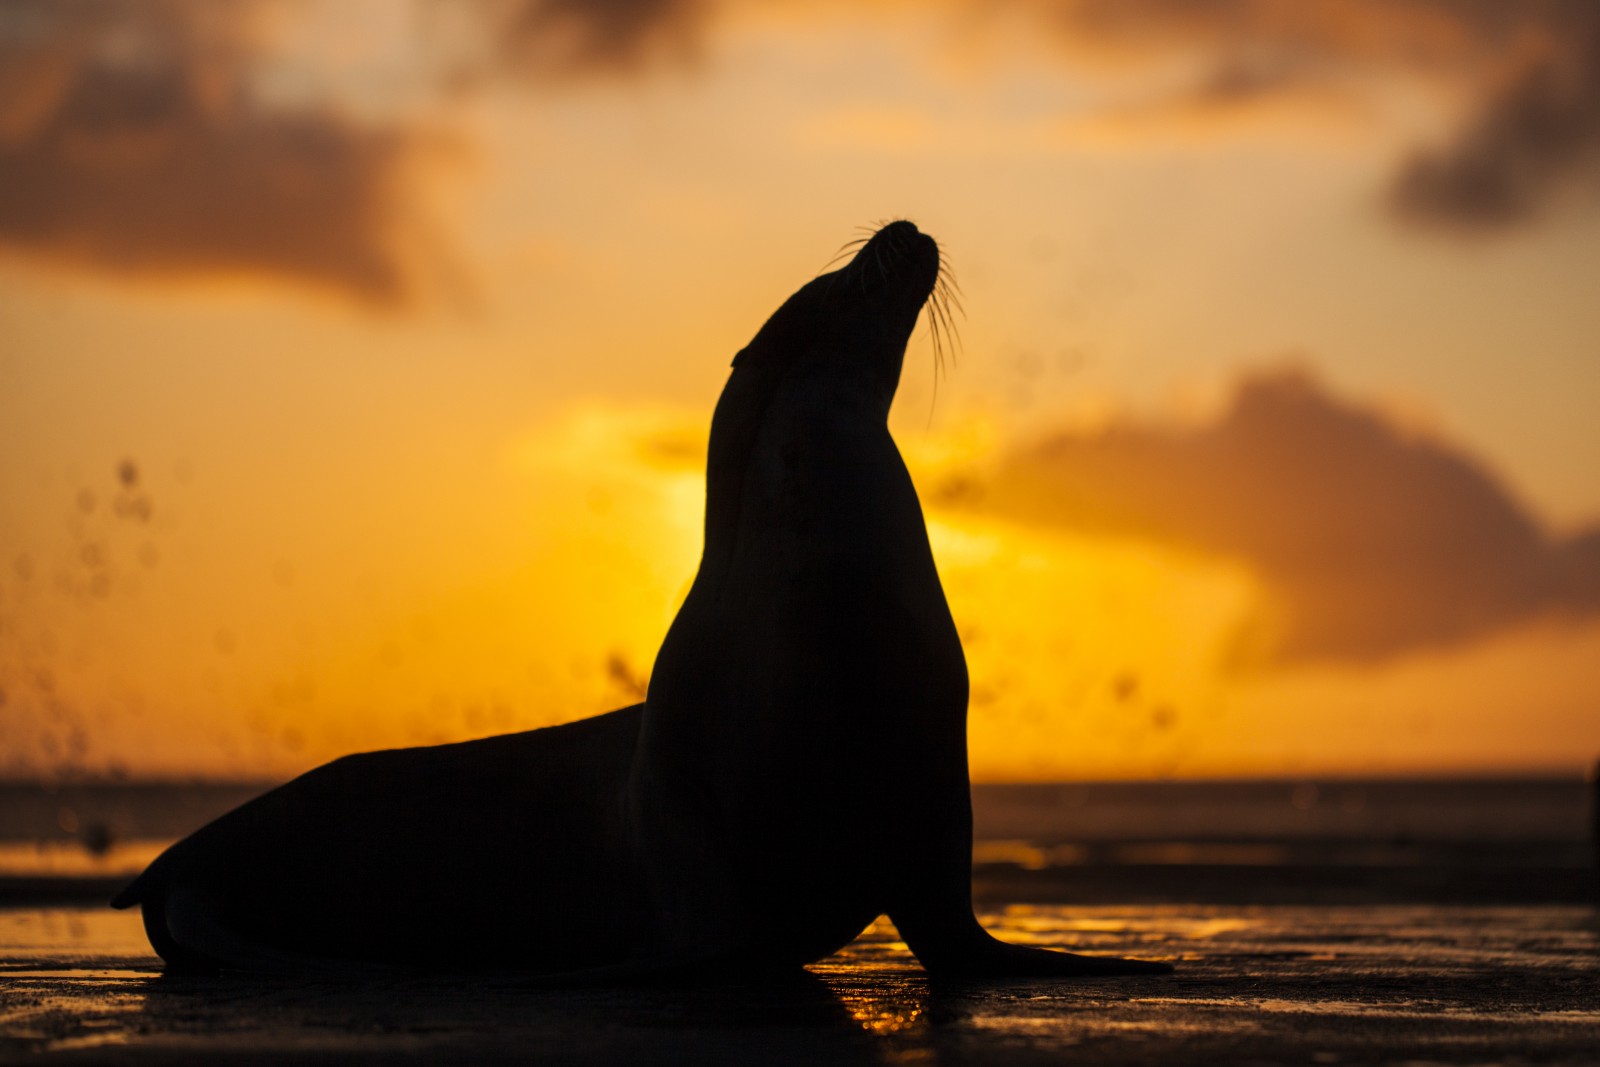 Sea lion, Galapagos, Ecuador, Supplier Photo (Tropic)